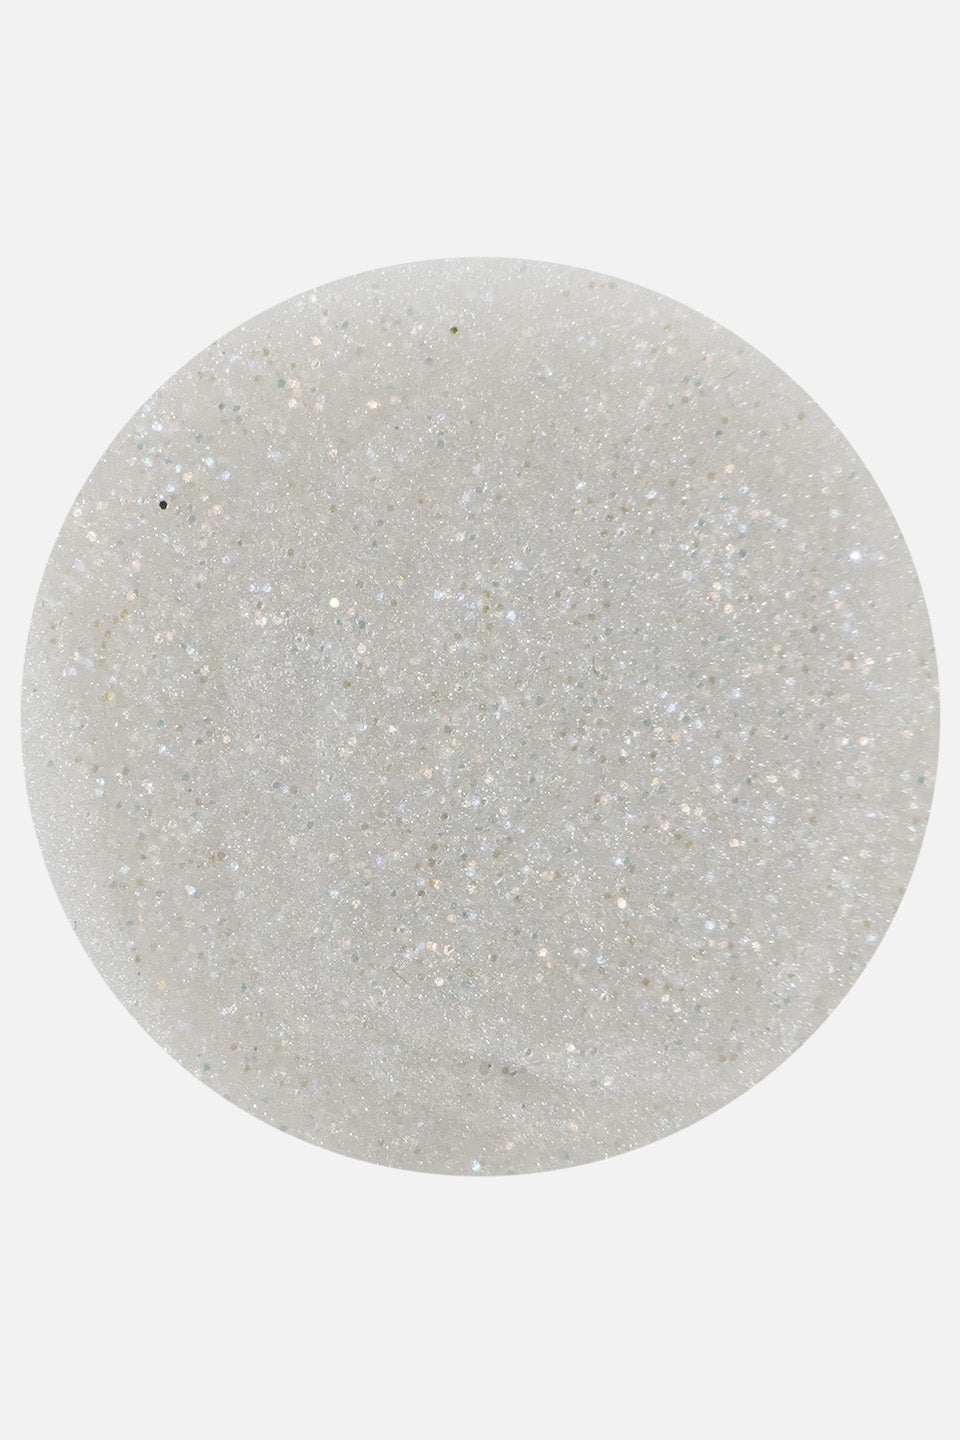 Polvo acrílico blanco diamante glitter 3 g